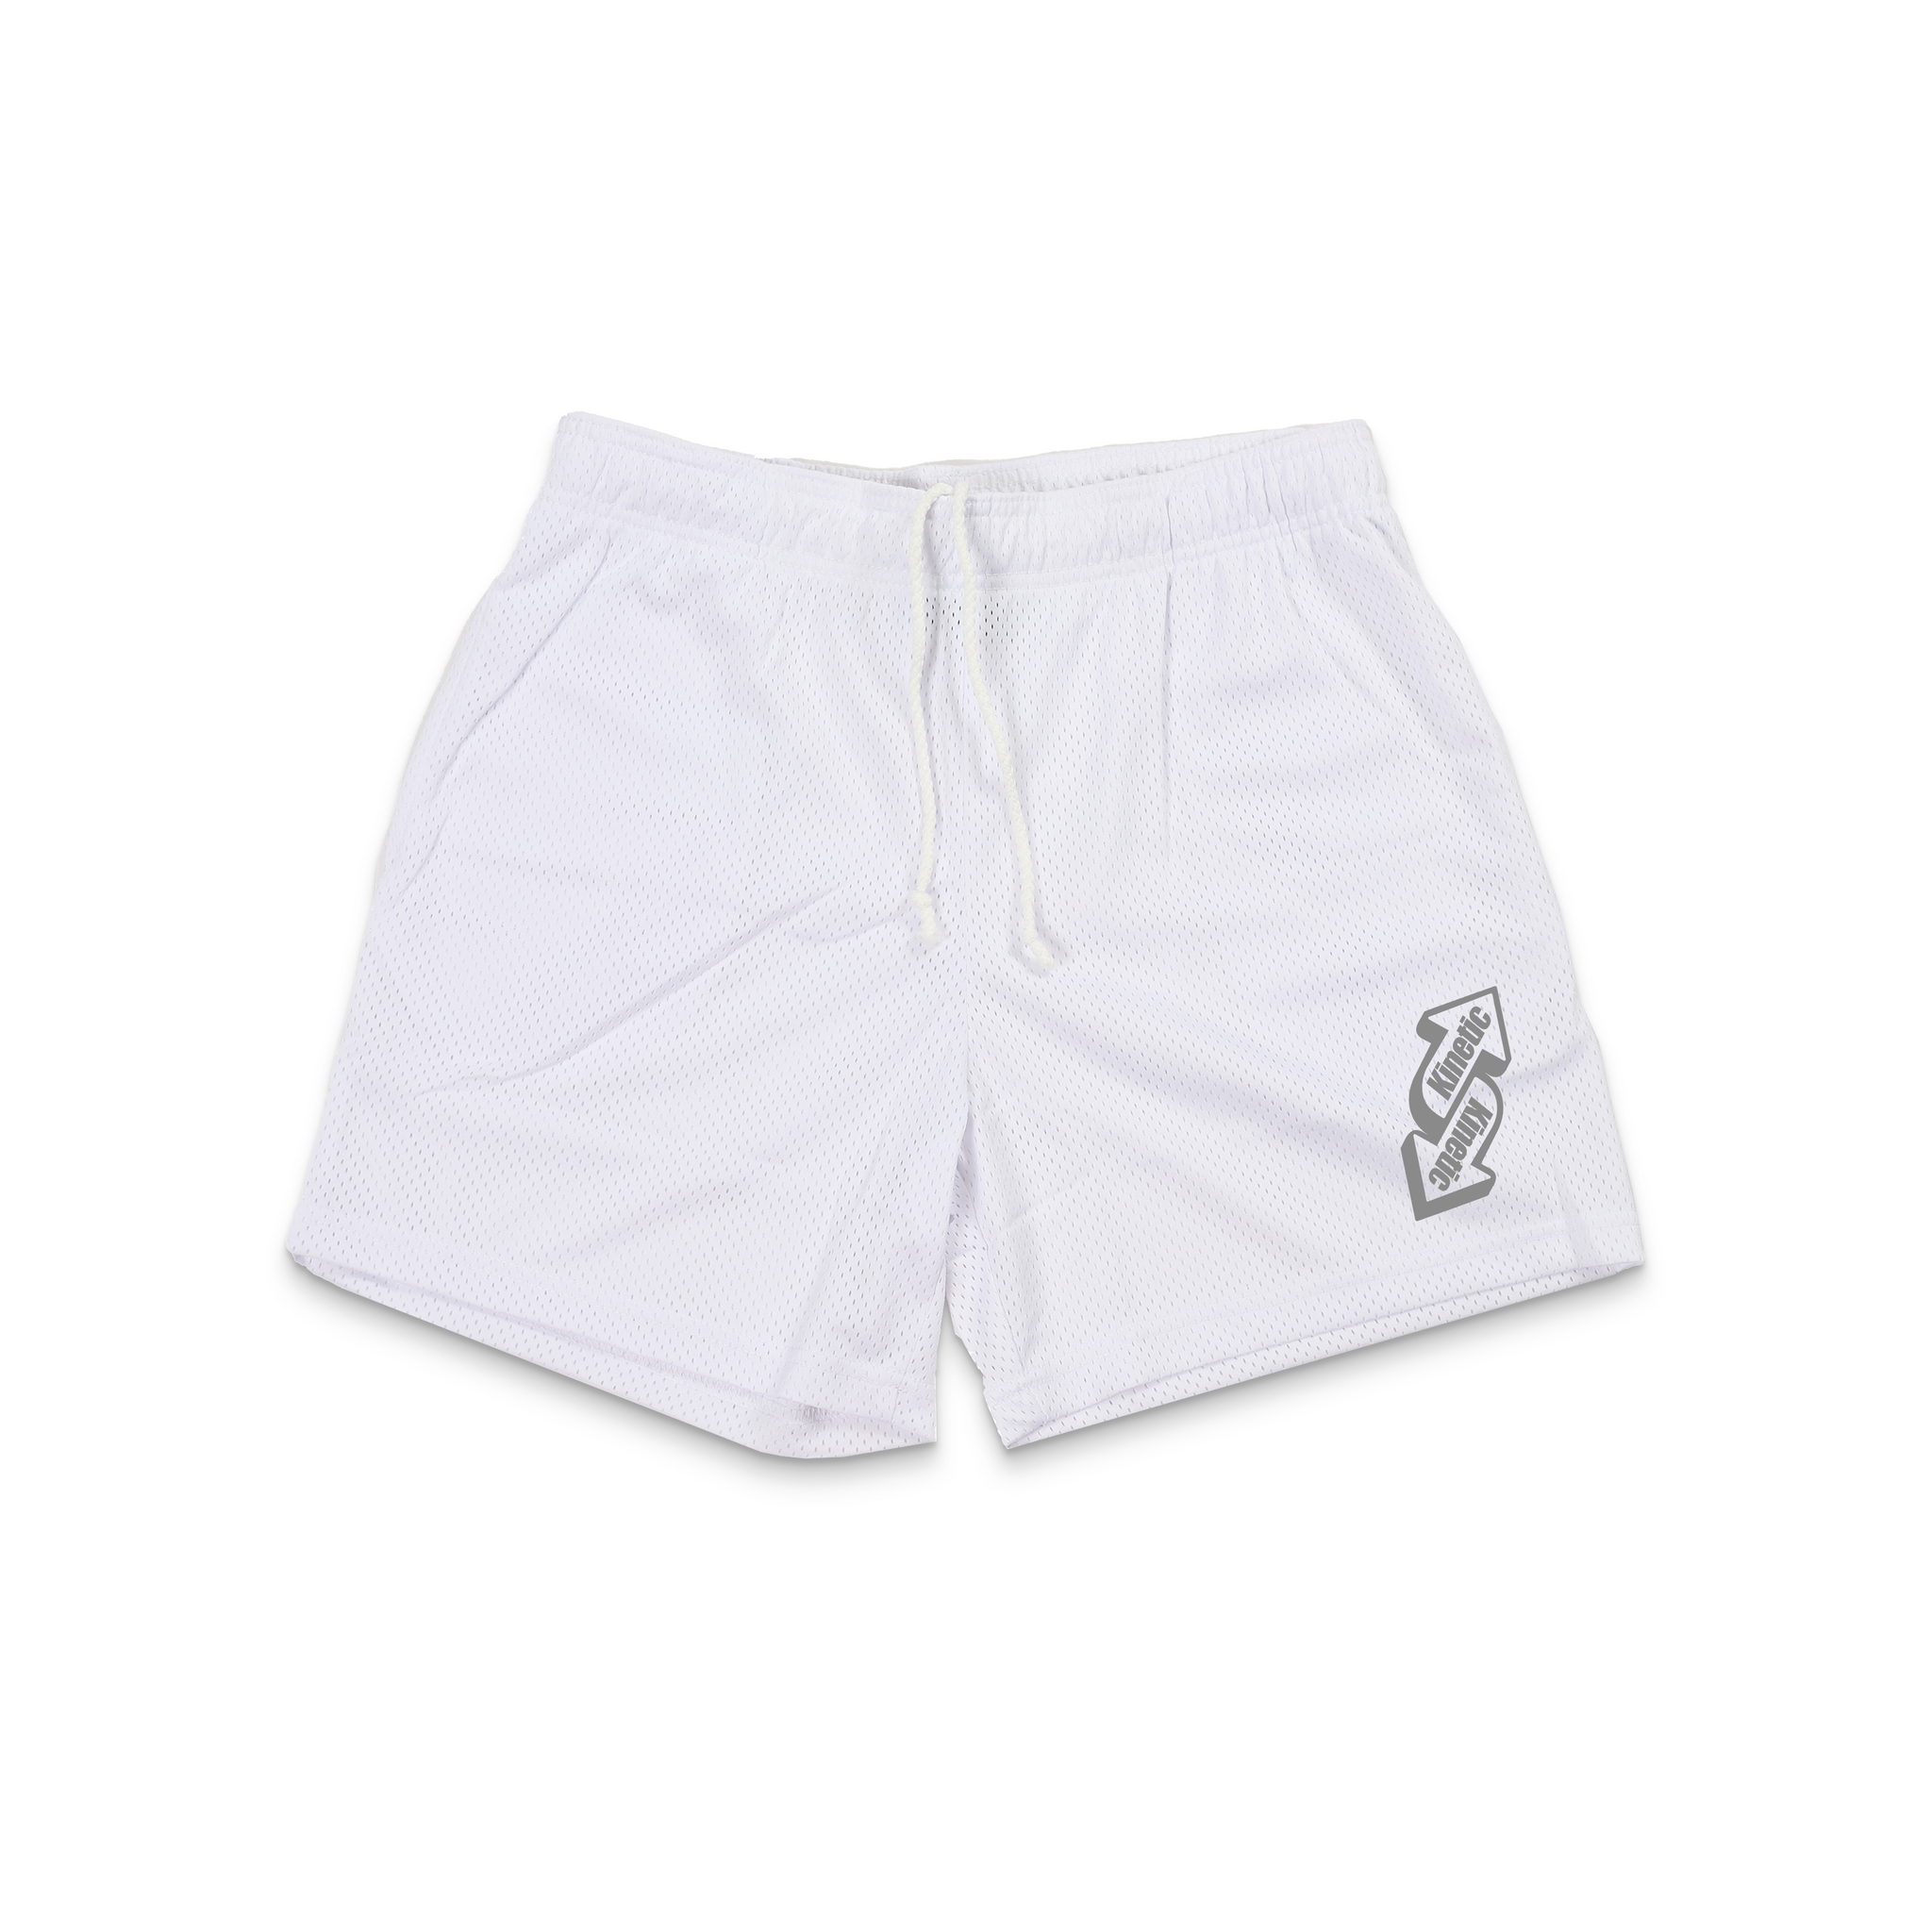 Basic Kinetic Shorts - White